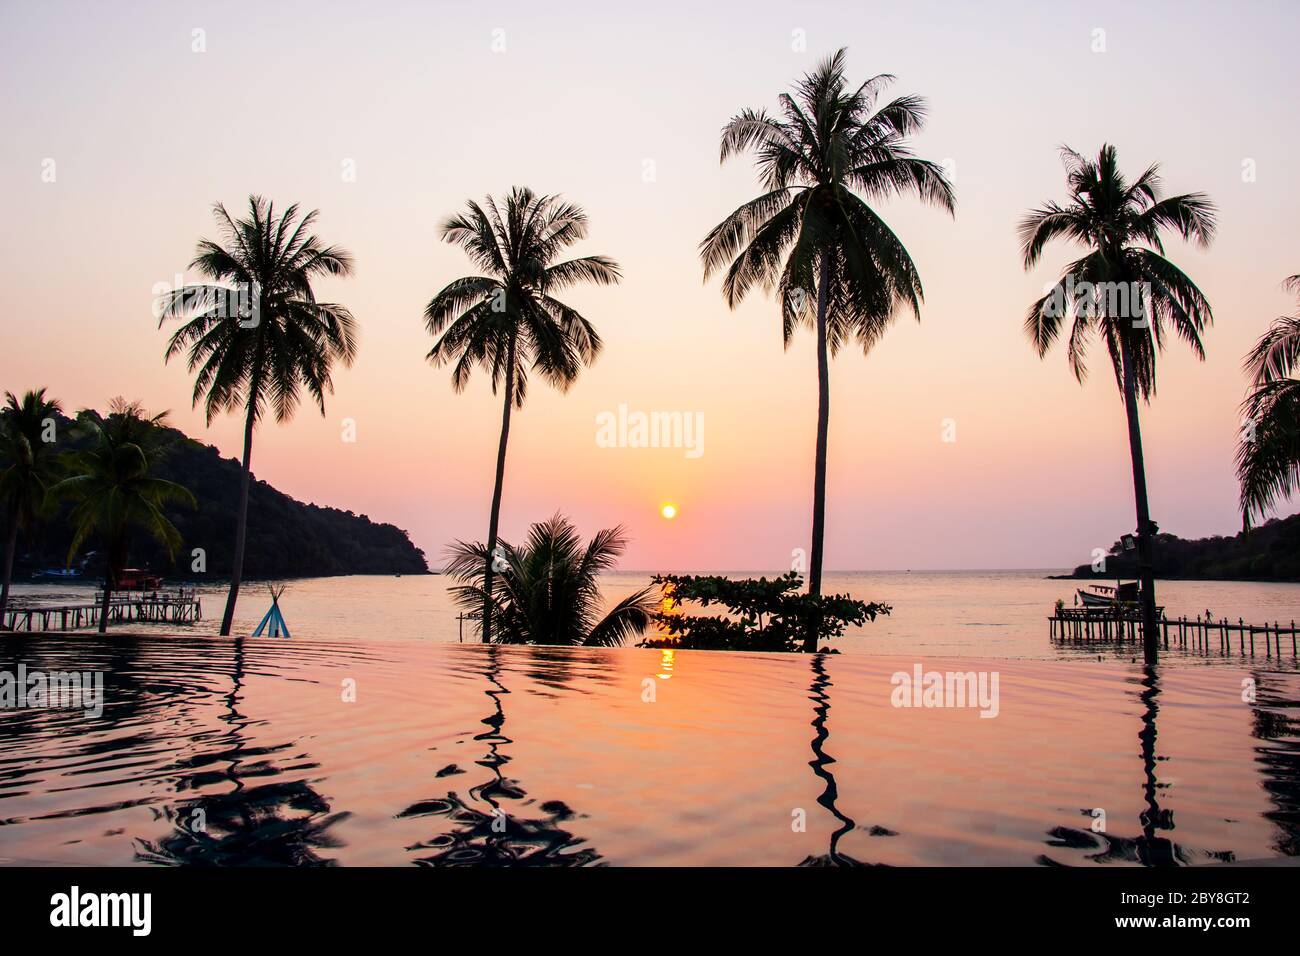 Sonnenuntergang reflektiert auf der Wasseroberfläche Vordergrund mit Kokospalmen Bereich AO Bang bao auf Koh kood Insel ist ein Bezirk der trat Provinz. Thailand. Stockfoto